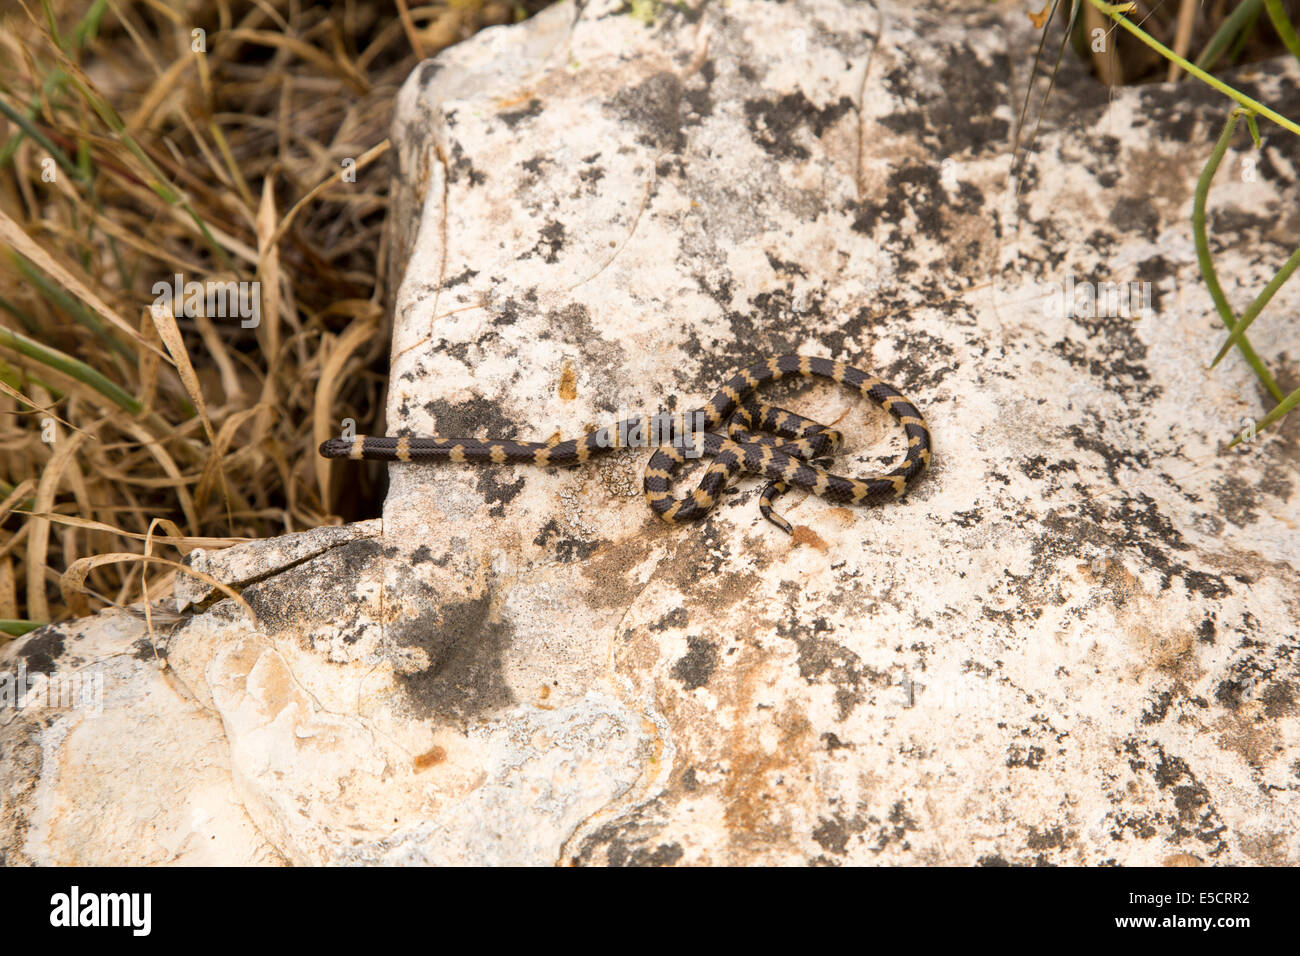 Mueller la serpiente de dos cabezas (Micrelaps muelleri) un trasero Atractaspidid fanged venenosas especies endémicas del Oriente Medio. Photogr Foto de stock